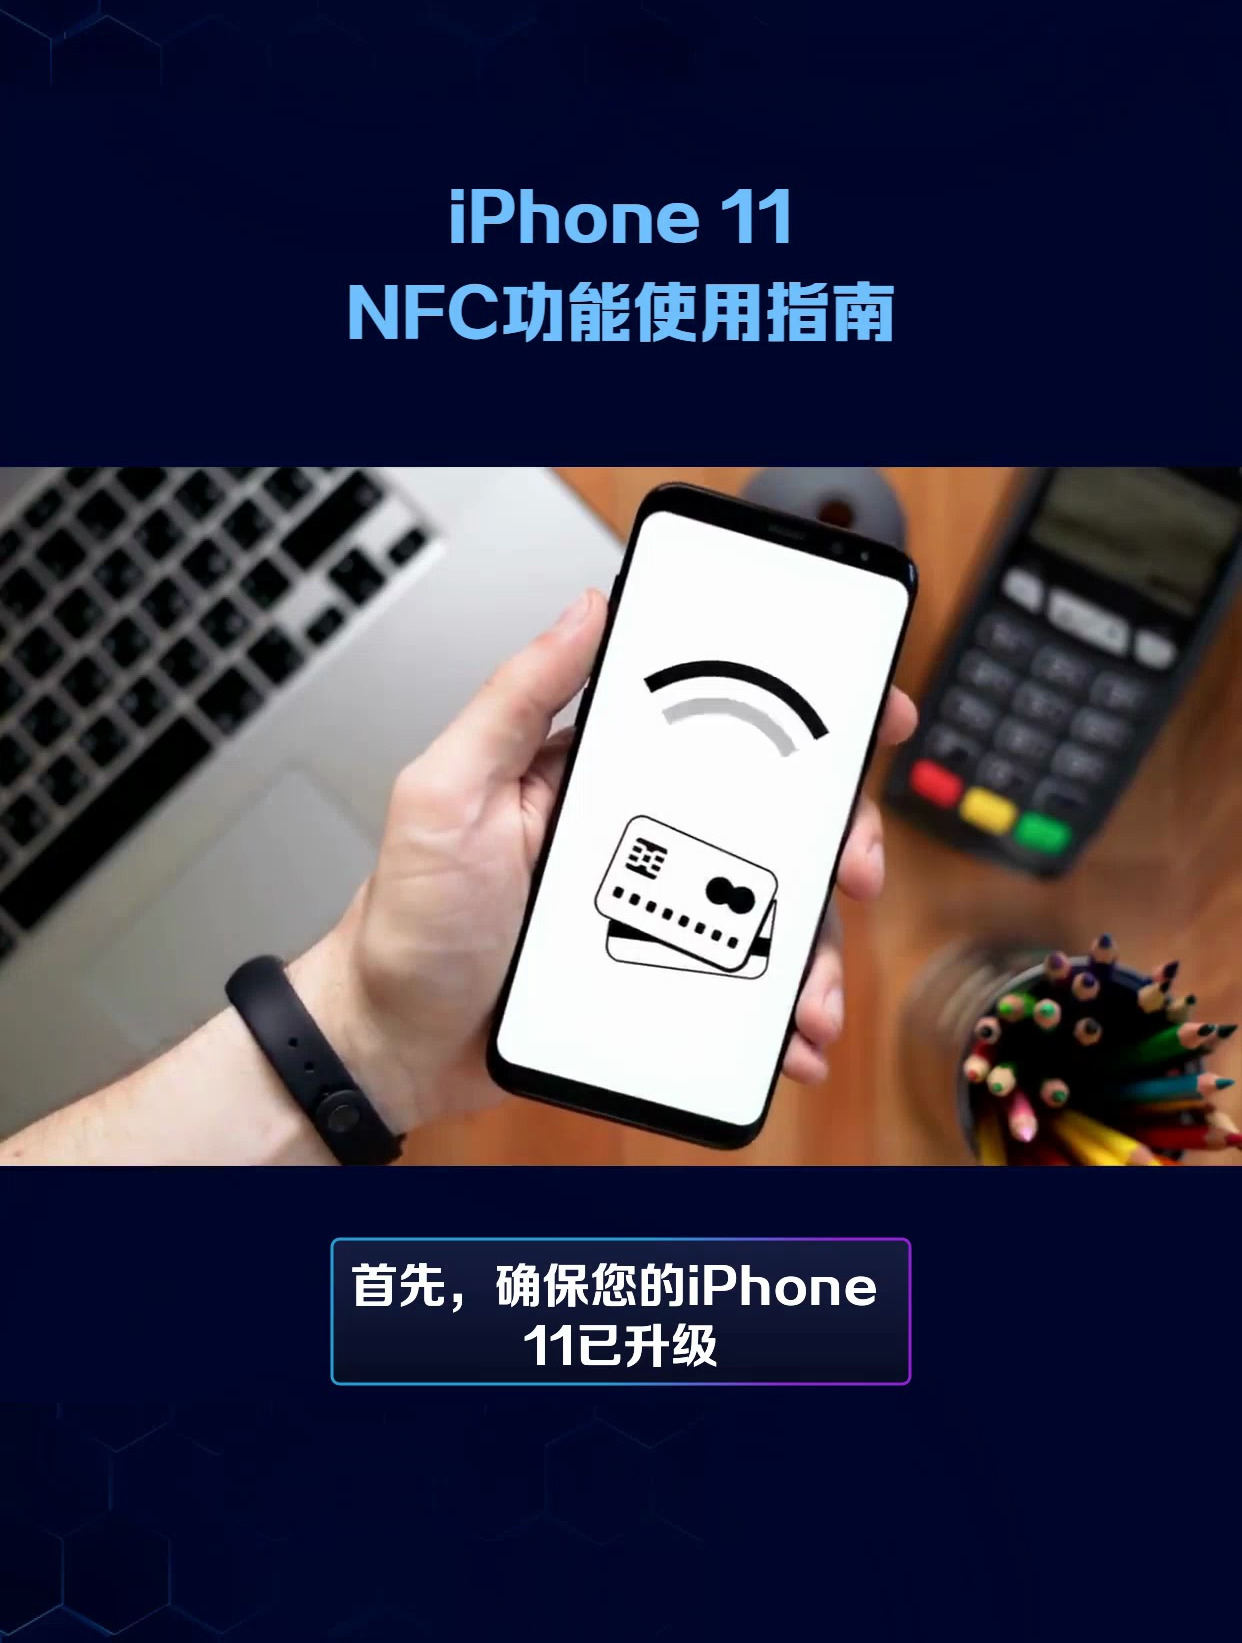 iphonexr支持nfc么、iphonexr支持nfc功能吗?